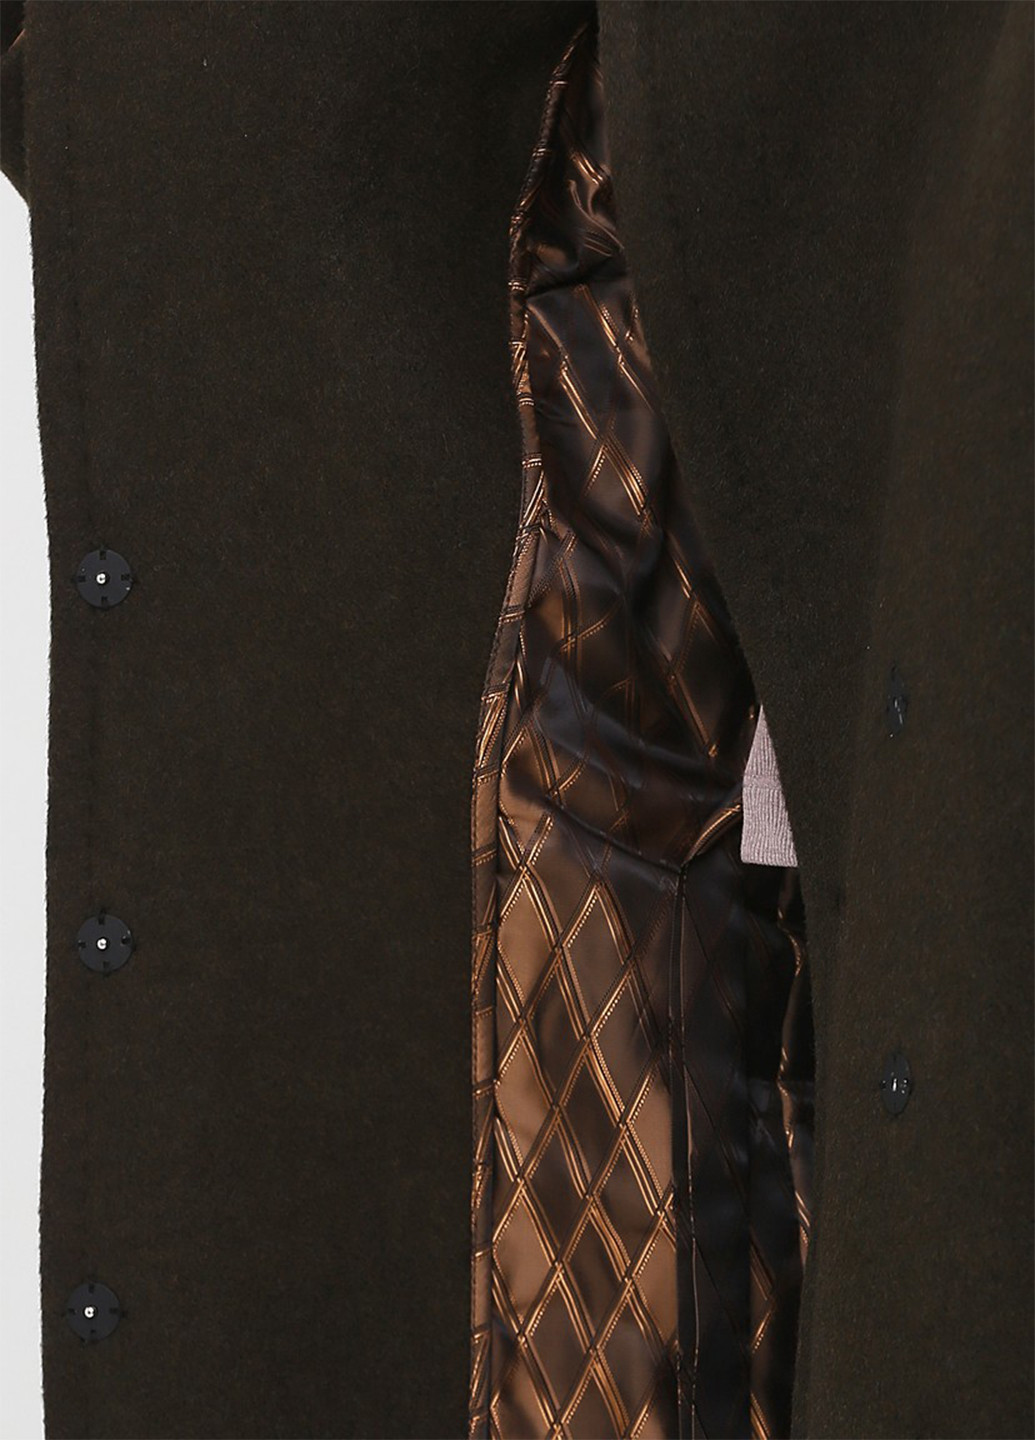 Темно-коричневое зимнее Пальто однобортное MiNiMax